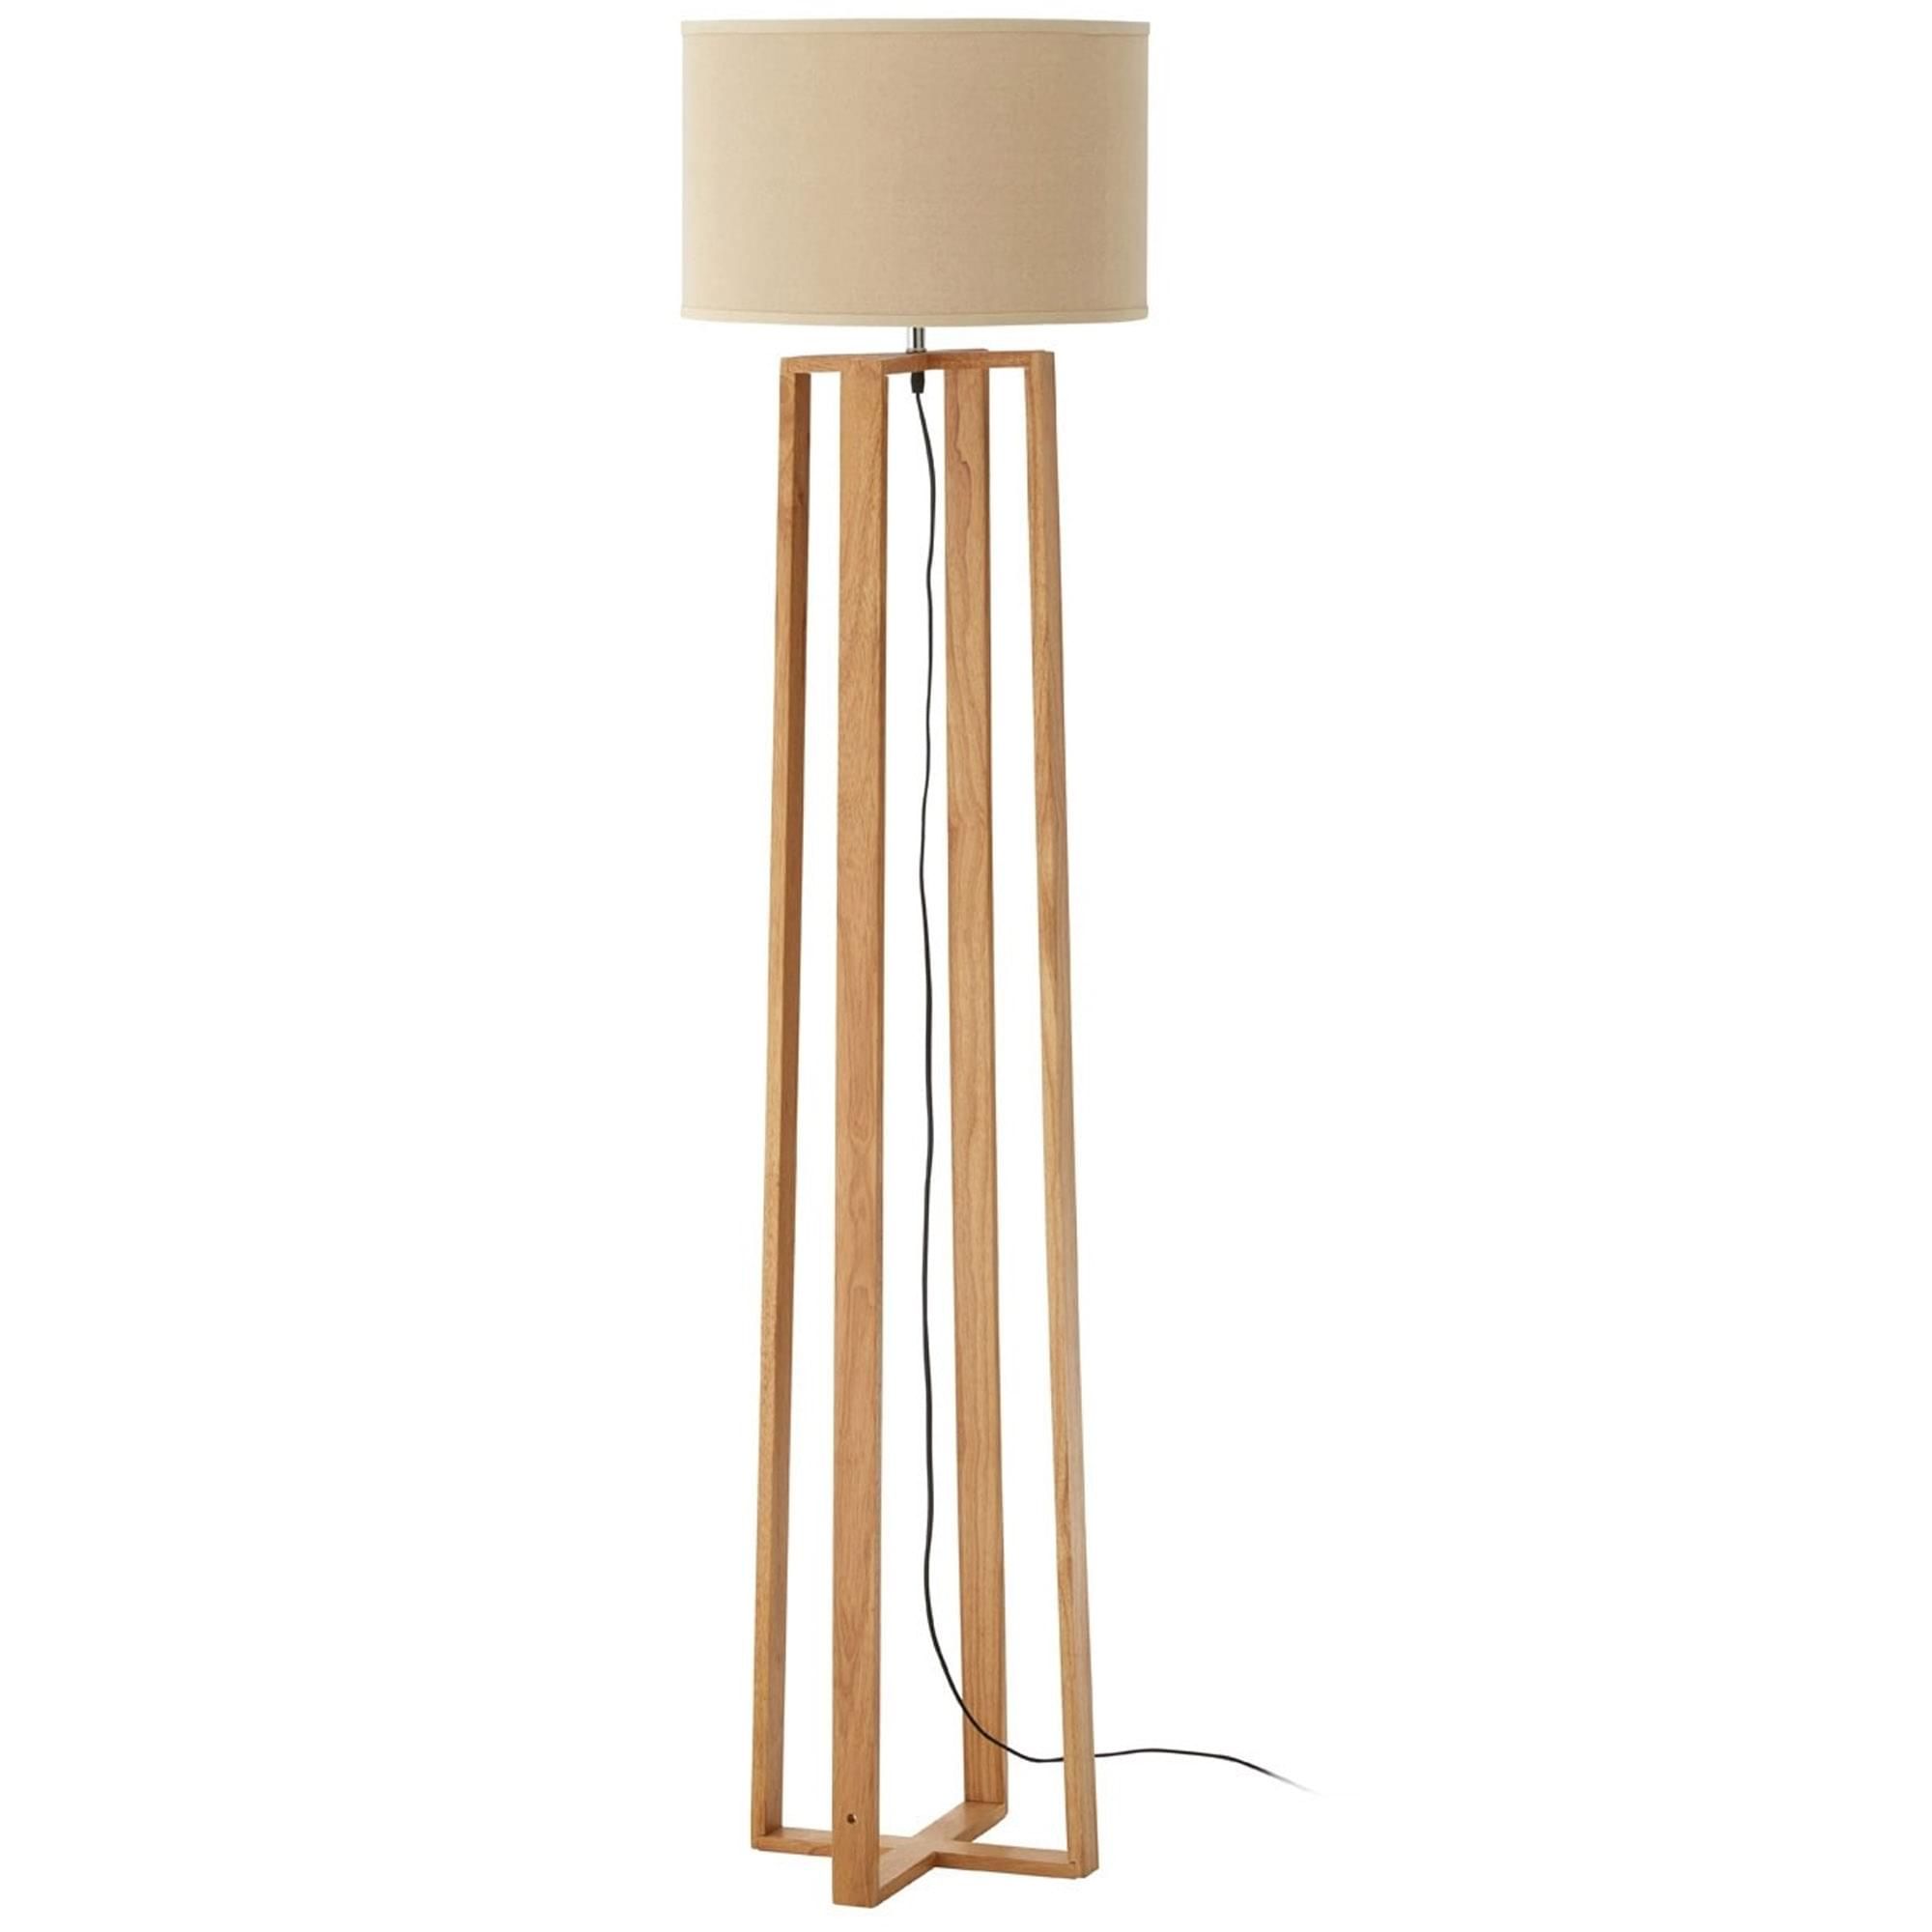 Lea Wooden Floor Lamp | Modern & Contemporary Floor Lamps With Regard To Oak Floor Lamps (View 7 of 15)